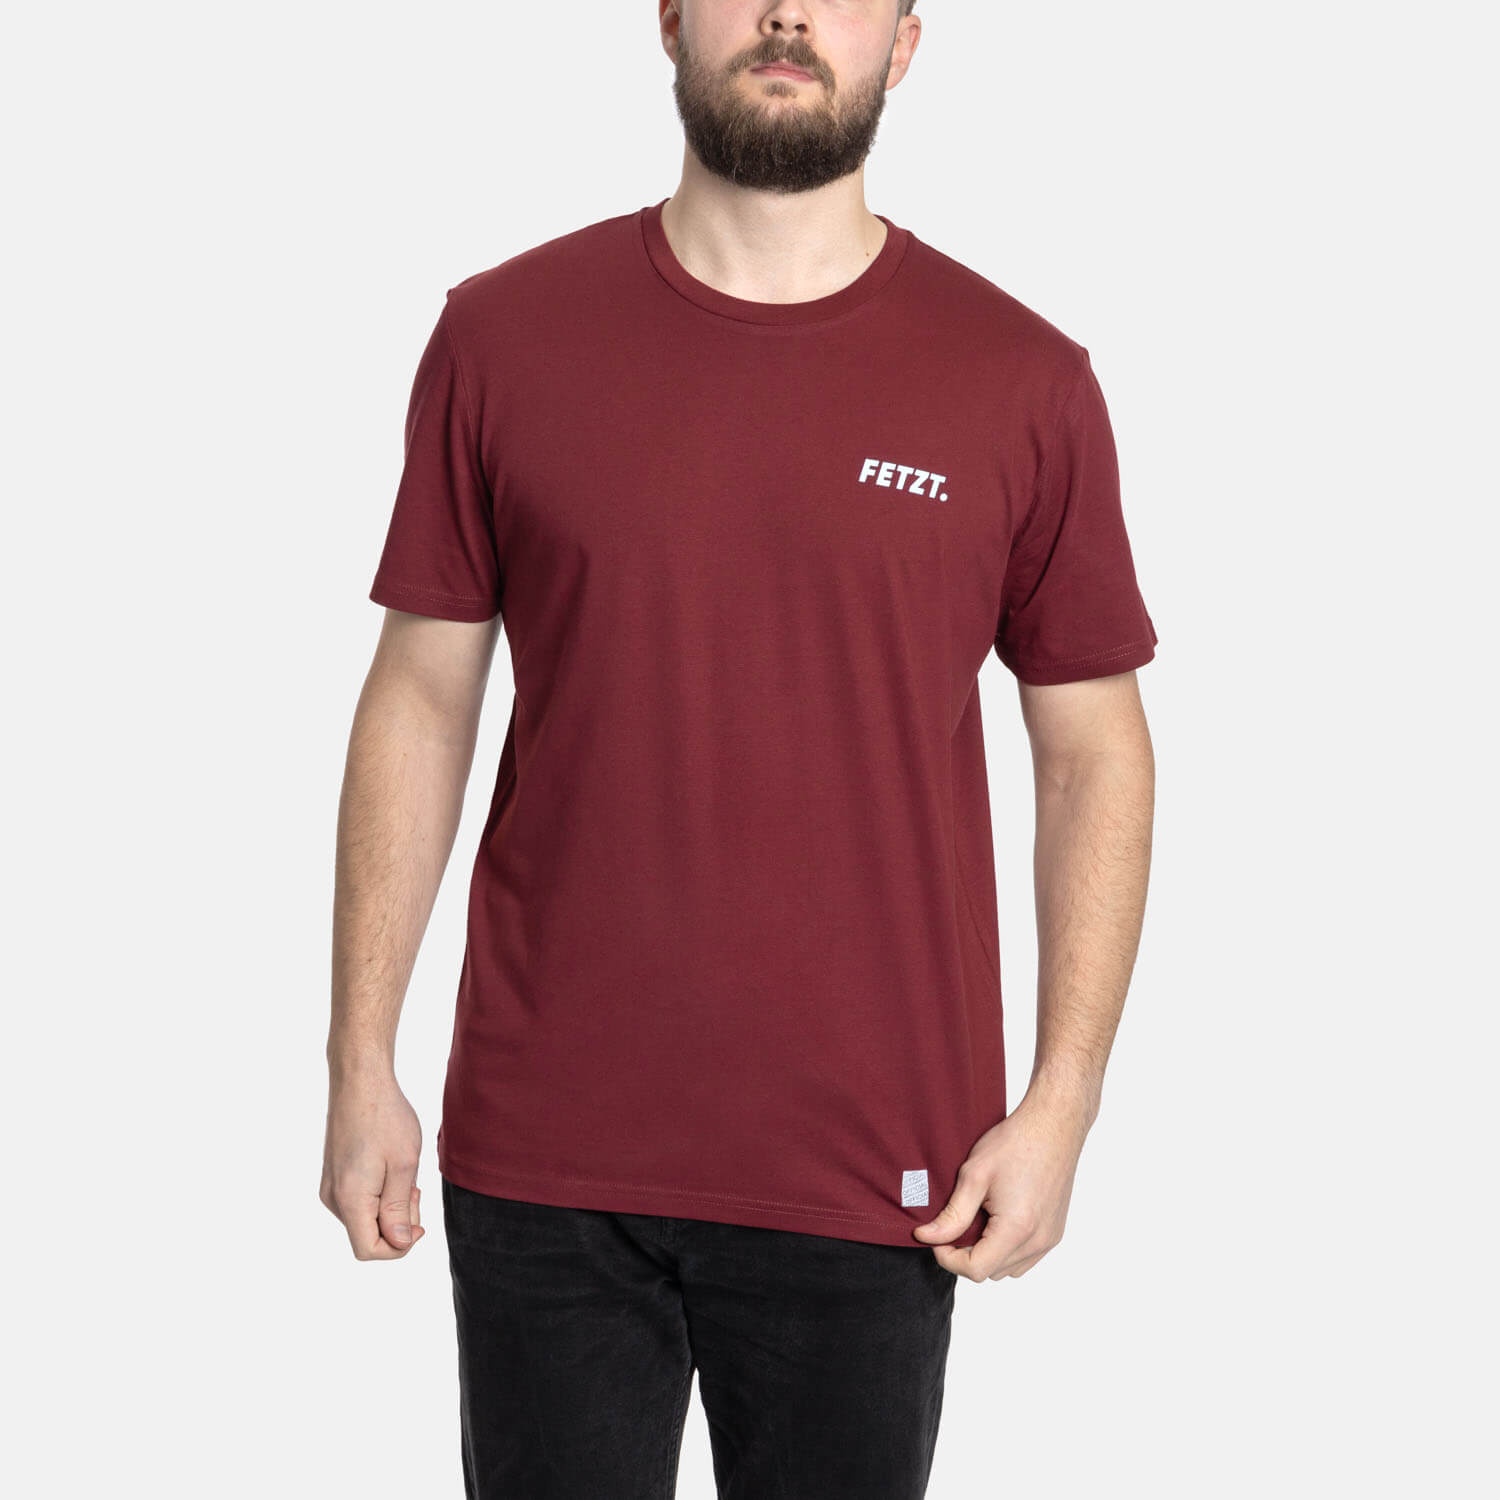 T-Shirt "FETZT."